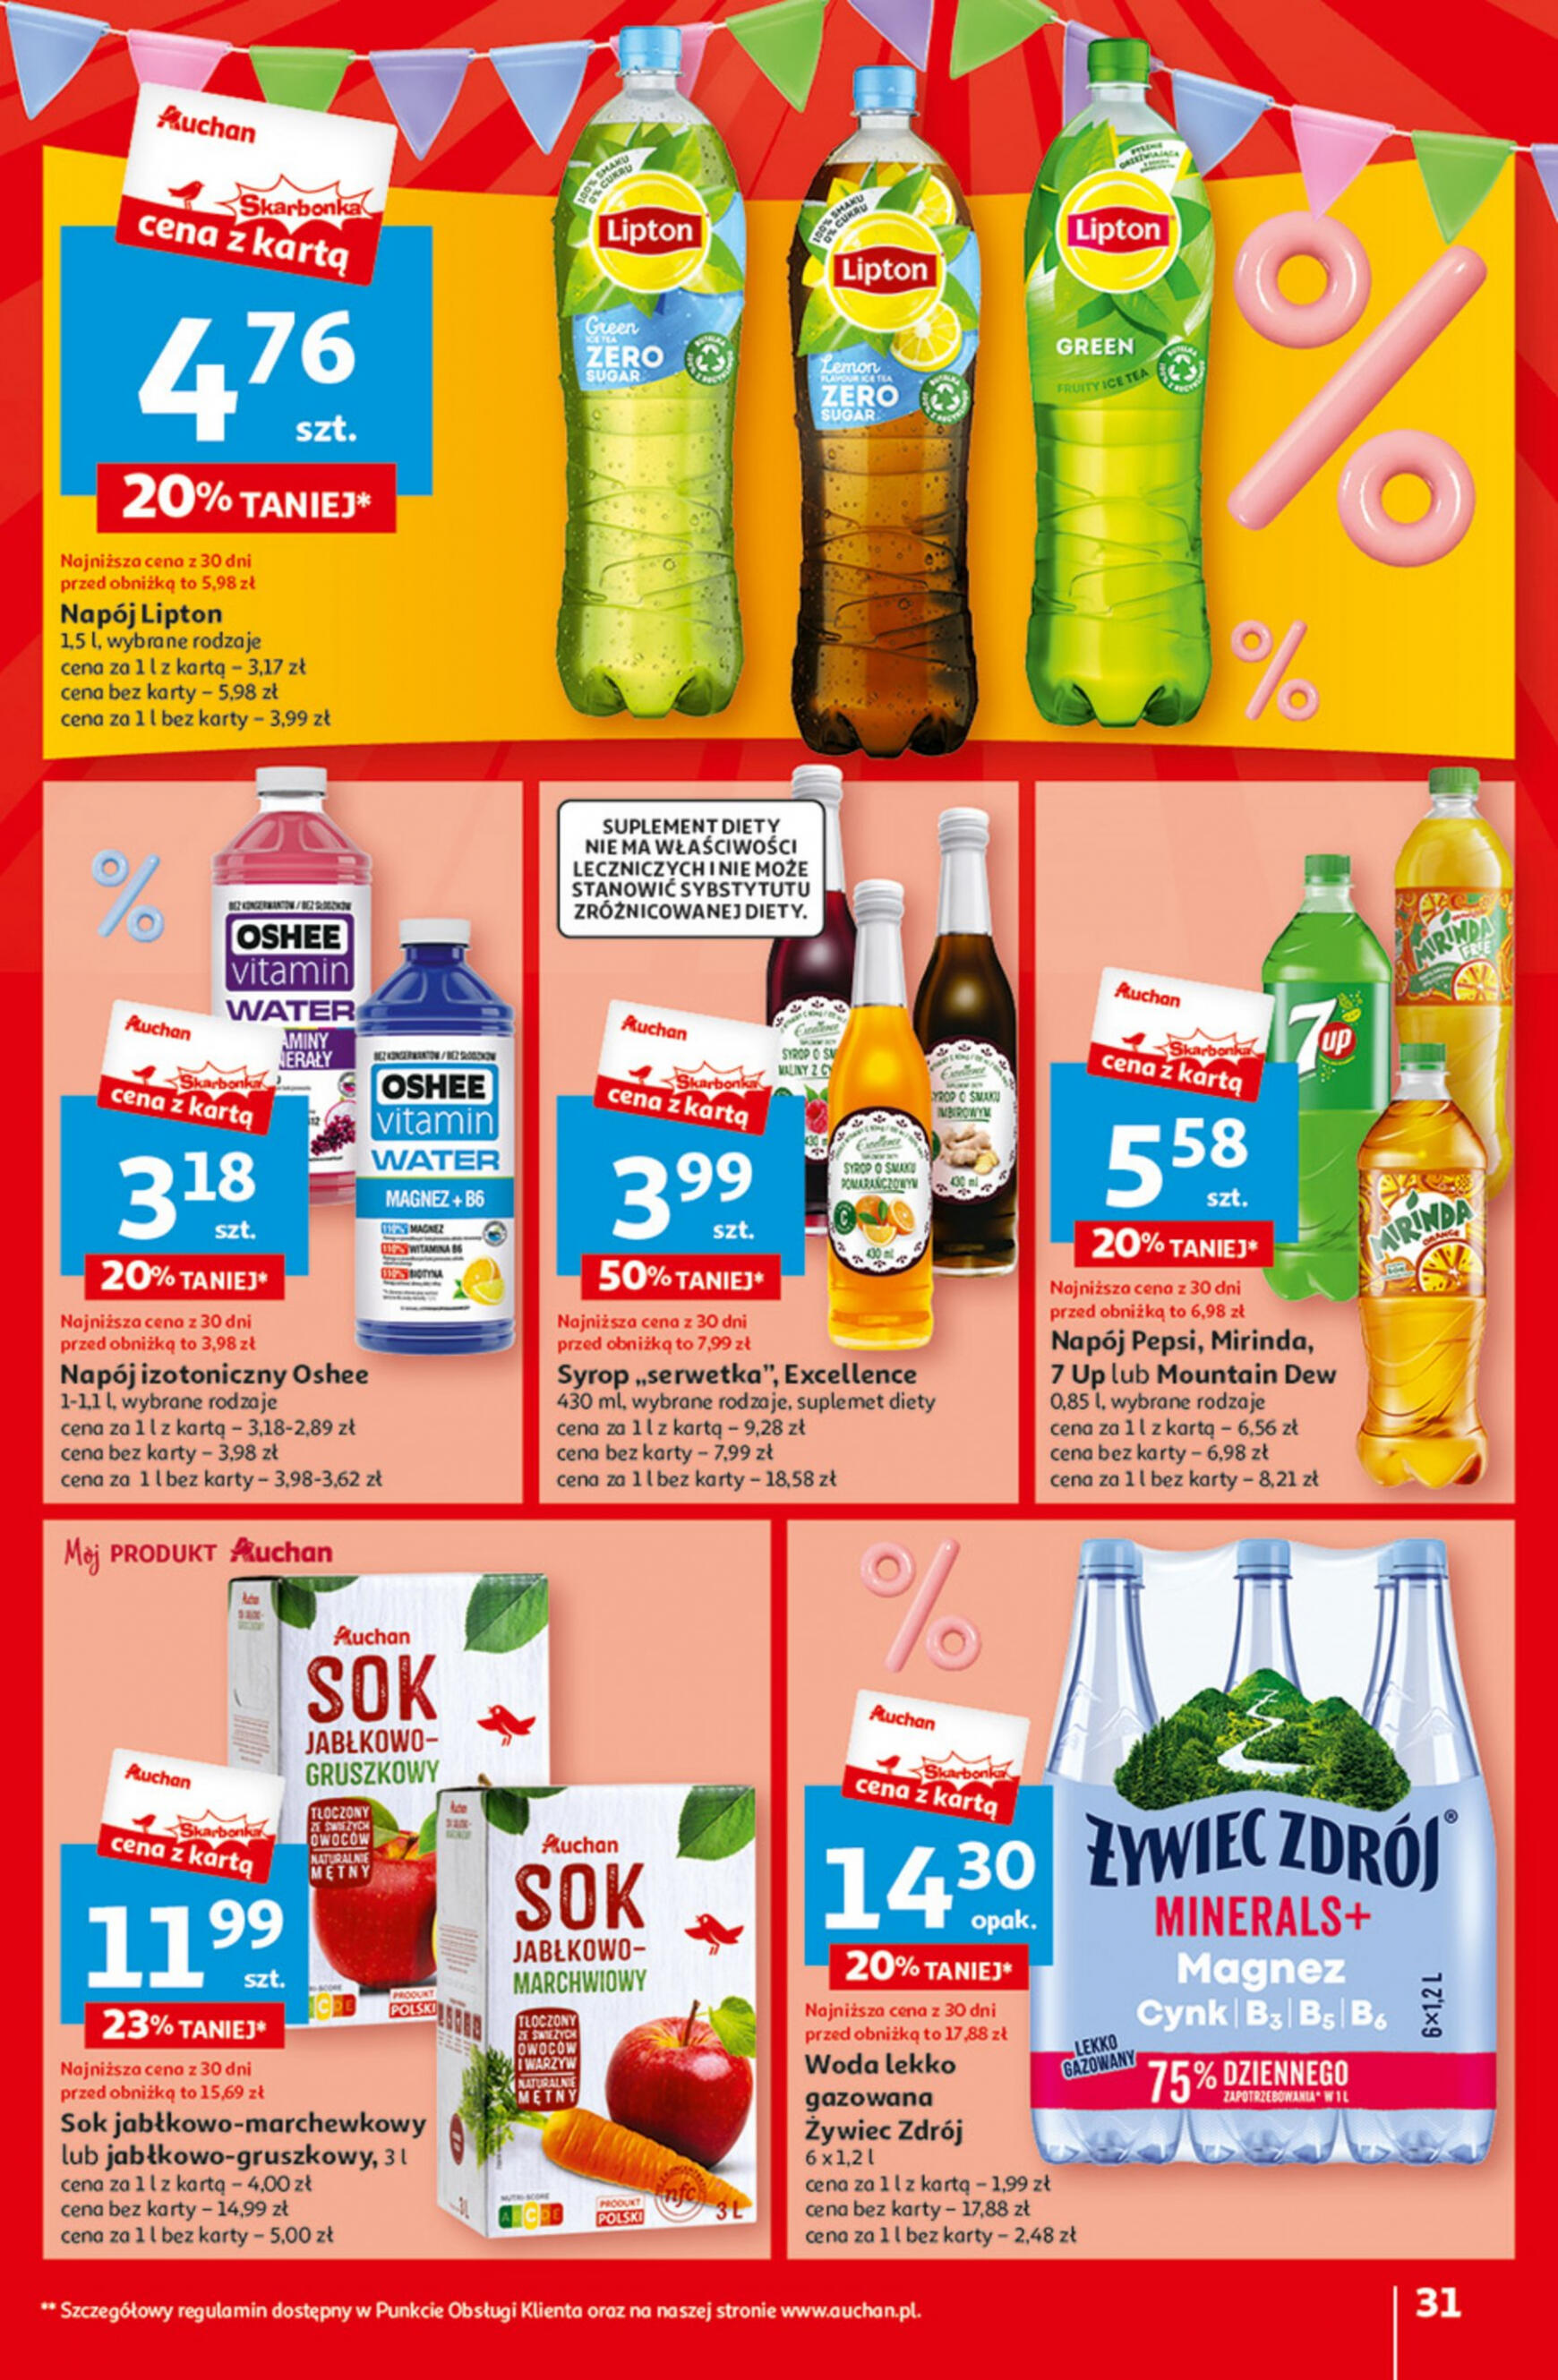 auchan - Hipermarket Auchan - Gazetka Jeszcze taniej na urodziny gazetka aktualna ważna od 09.05. - 15.05. - page: 31